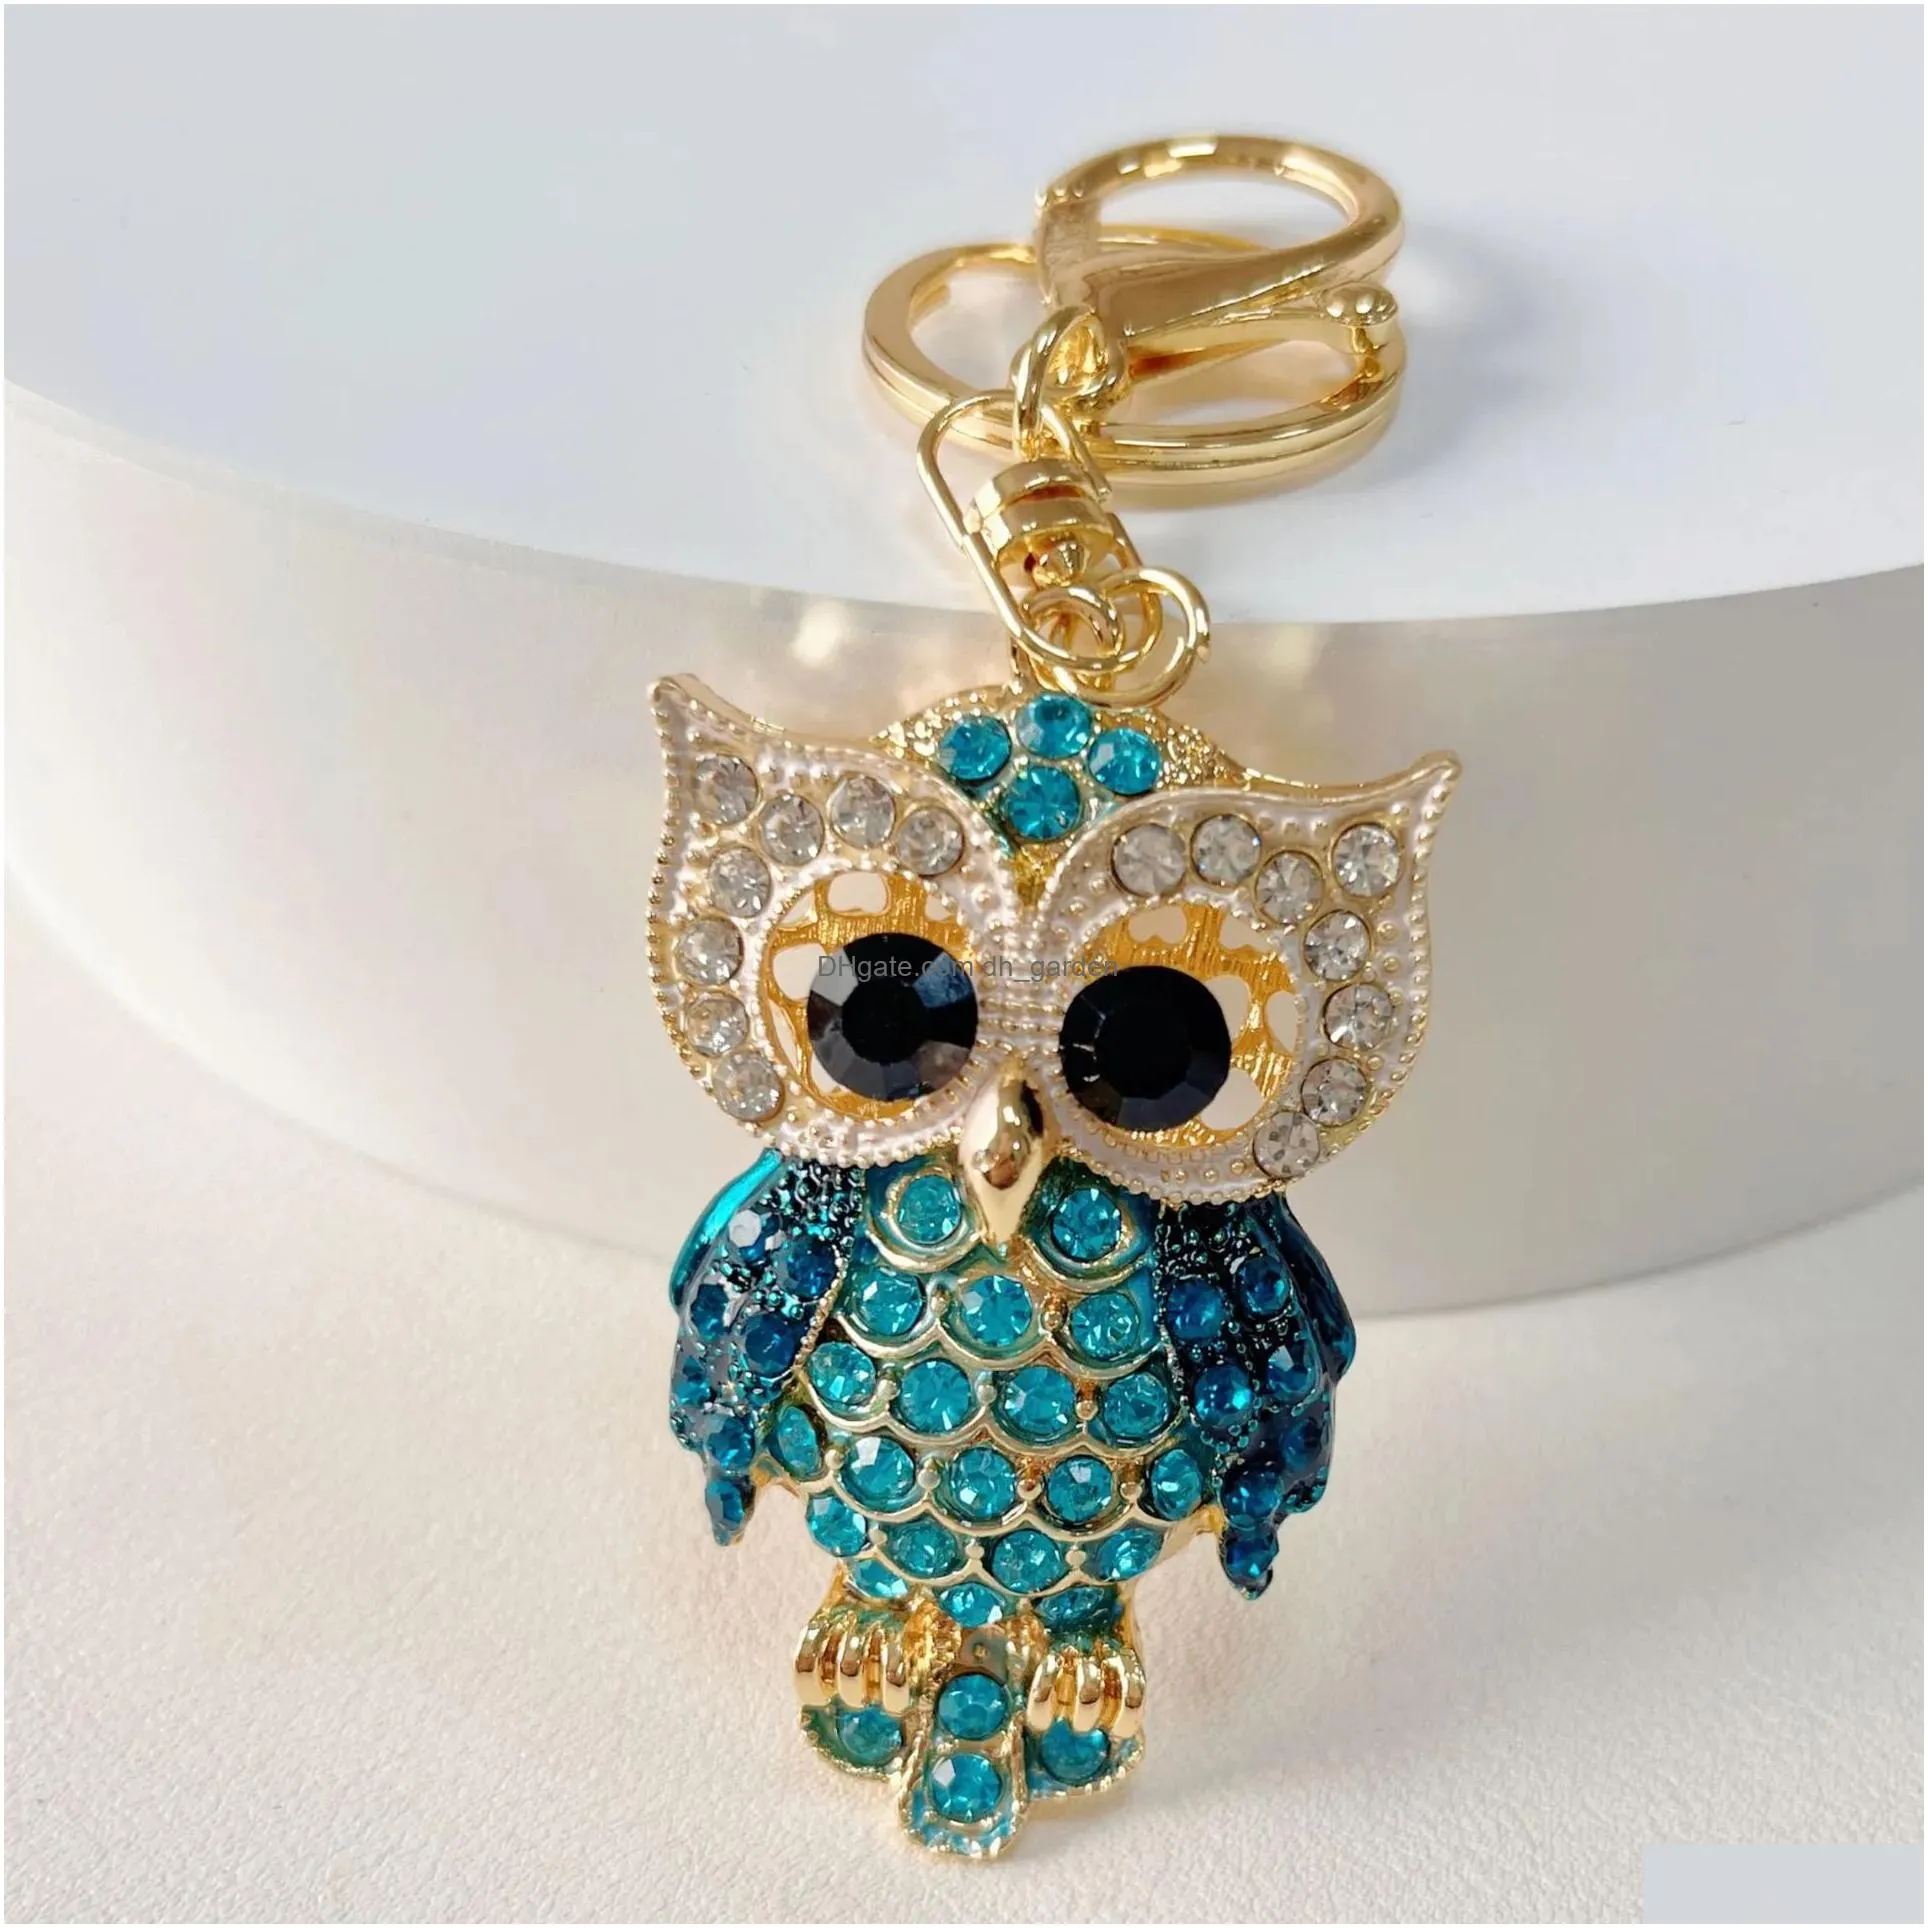 Key Rings Cute Owl Keyrings Luxury Crystal Rhinestone Animal Keychains Holder For Women Fashion Gold Cartoon Car Chains Bag Dhgarden Dhbhz